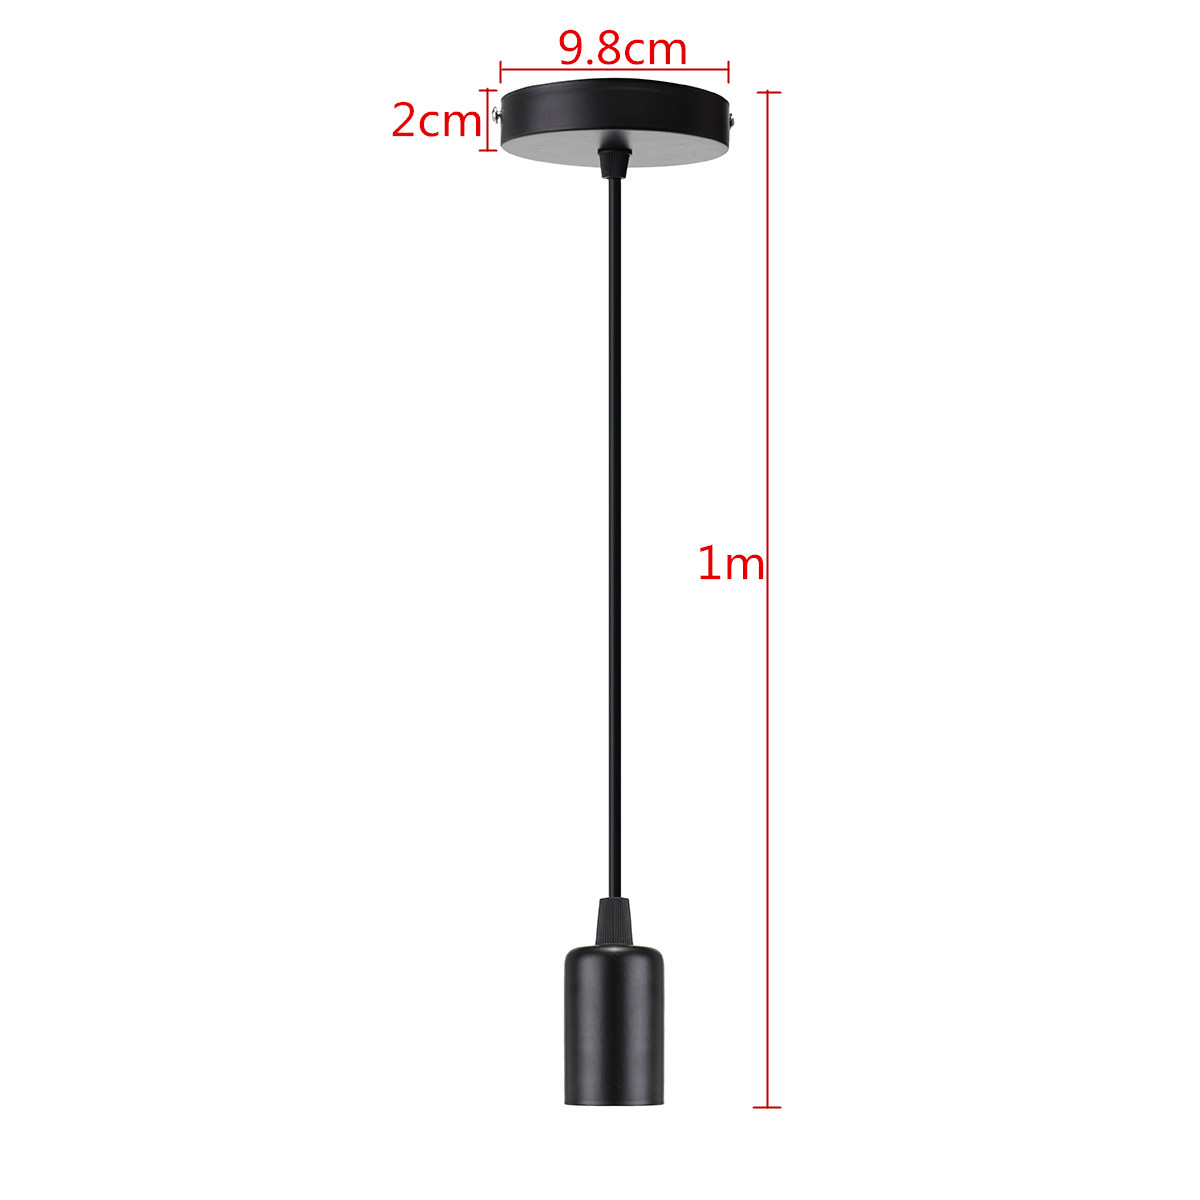 E27-Screw-Ceiling-Pendant-Lamp-Holder-Socket-Base-Light-Hanging-Fitting-Decor-220V-1260413